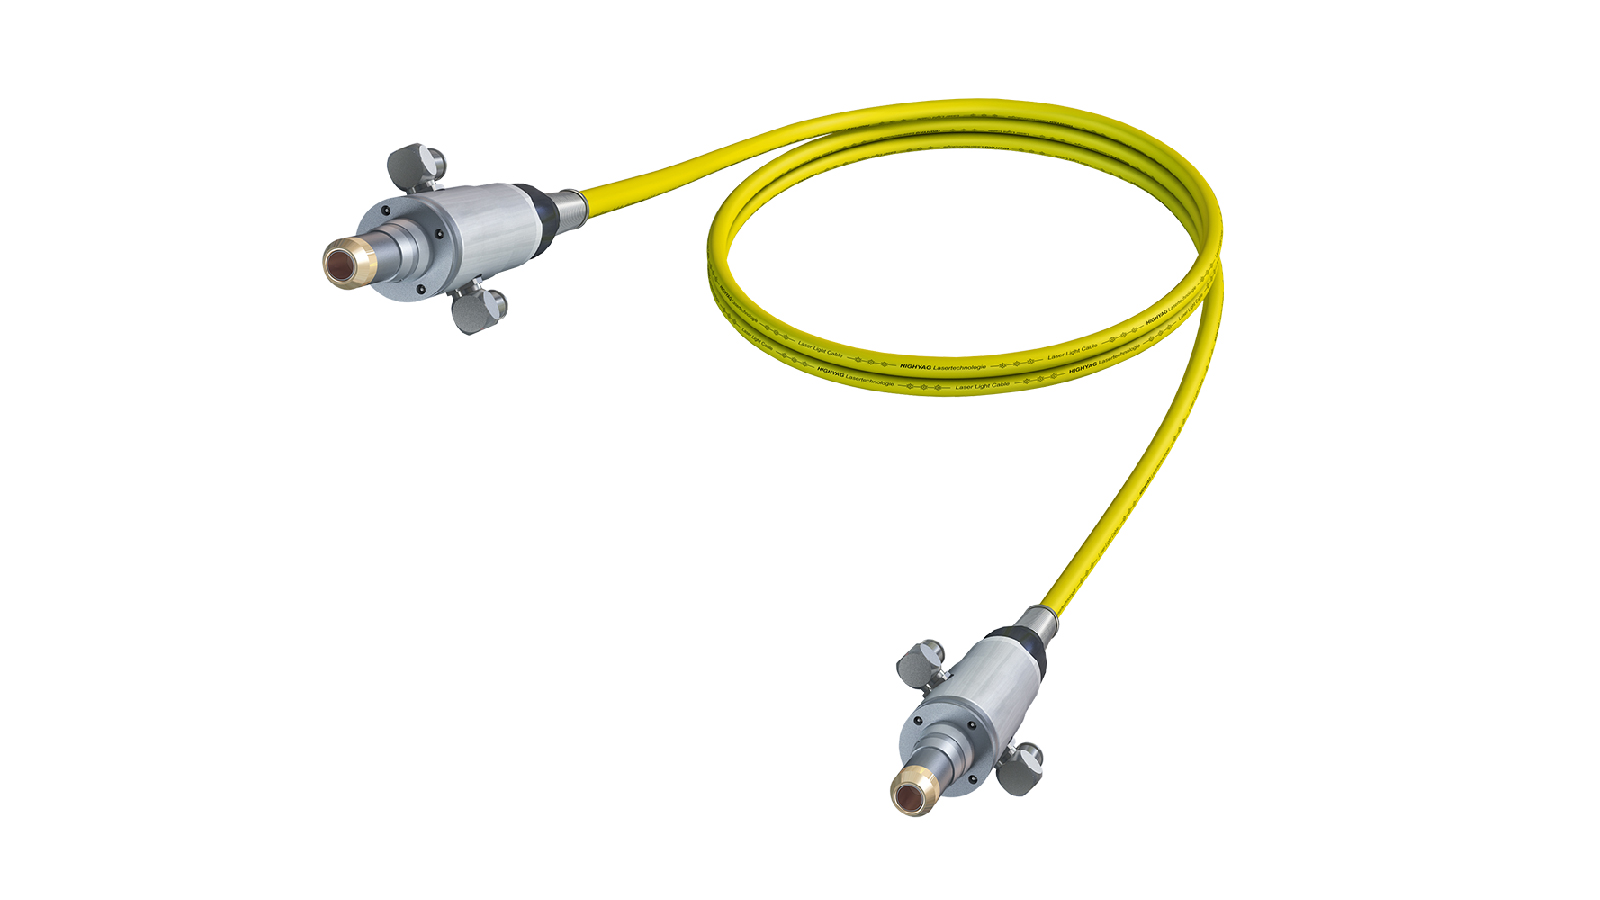 II-VI Laser Light Cables